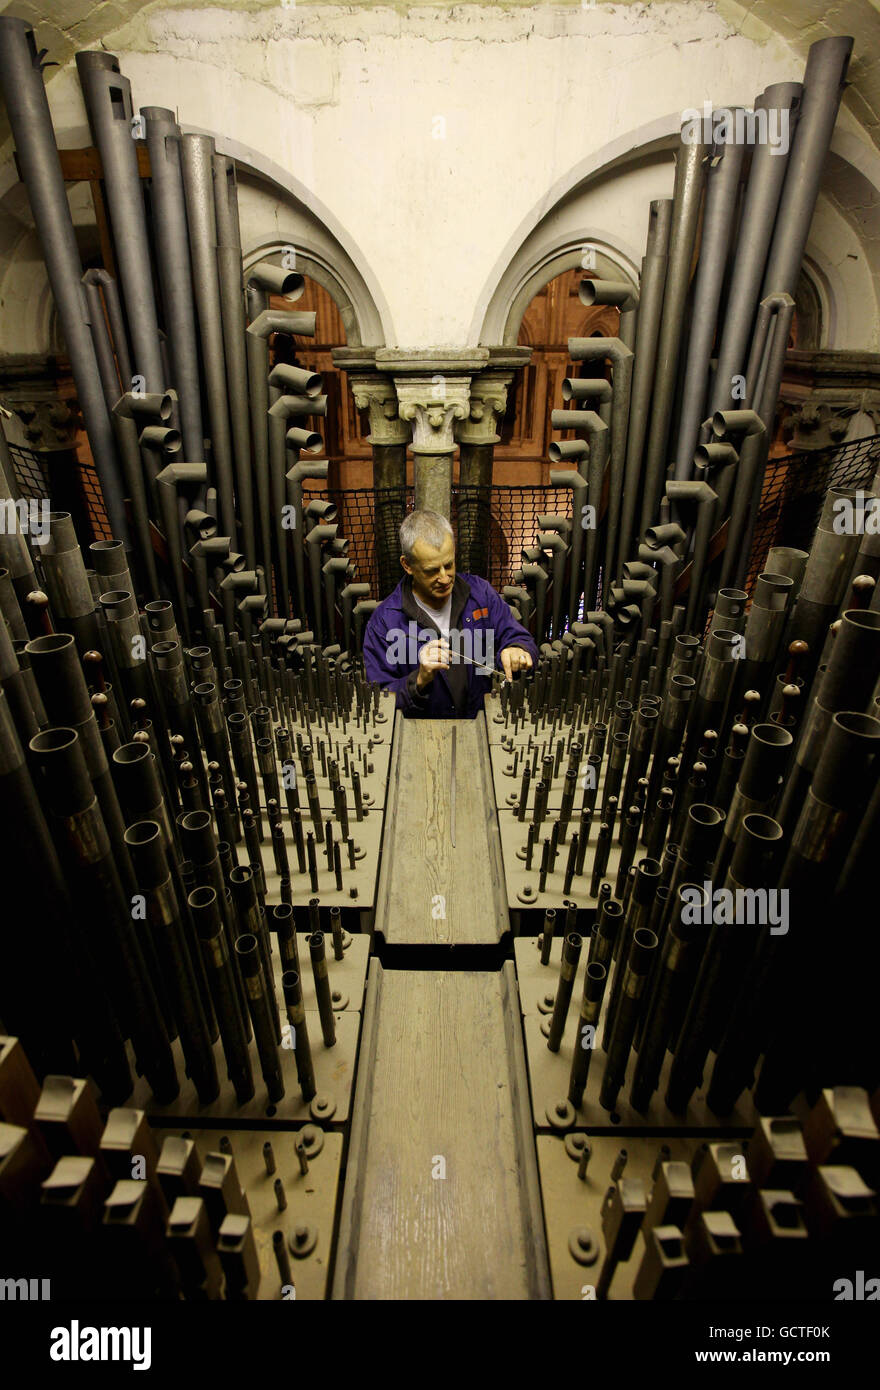 Orgel Tuner David Wintle bei der Arbeit im Orgelloft der Canterbury Cathedral in Canterbury, Kent, während er eine von über 3000 Pfeifen im Loft spielt, aus denen die Orgel besteht, von der einige Teile über 300 Jahre alt sind. Stockfoto